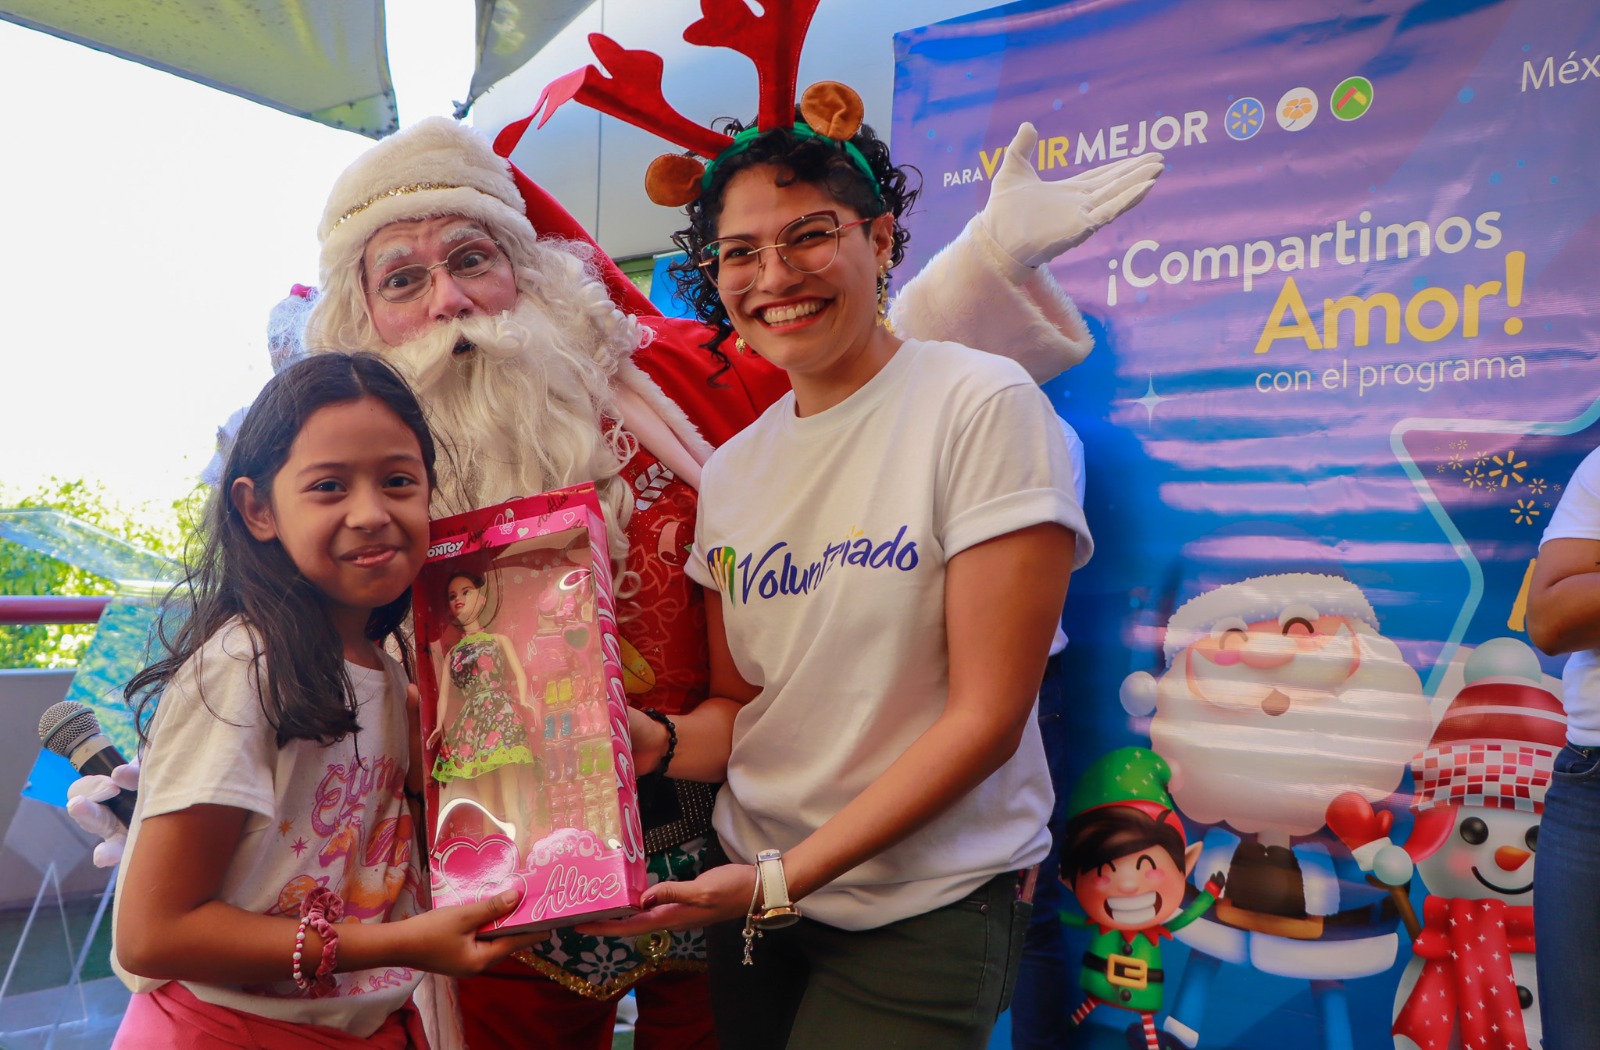 Walmart hizo magia con campaña social para miles de familias centroamericanas